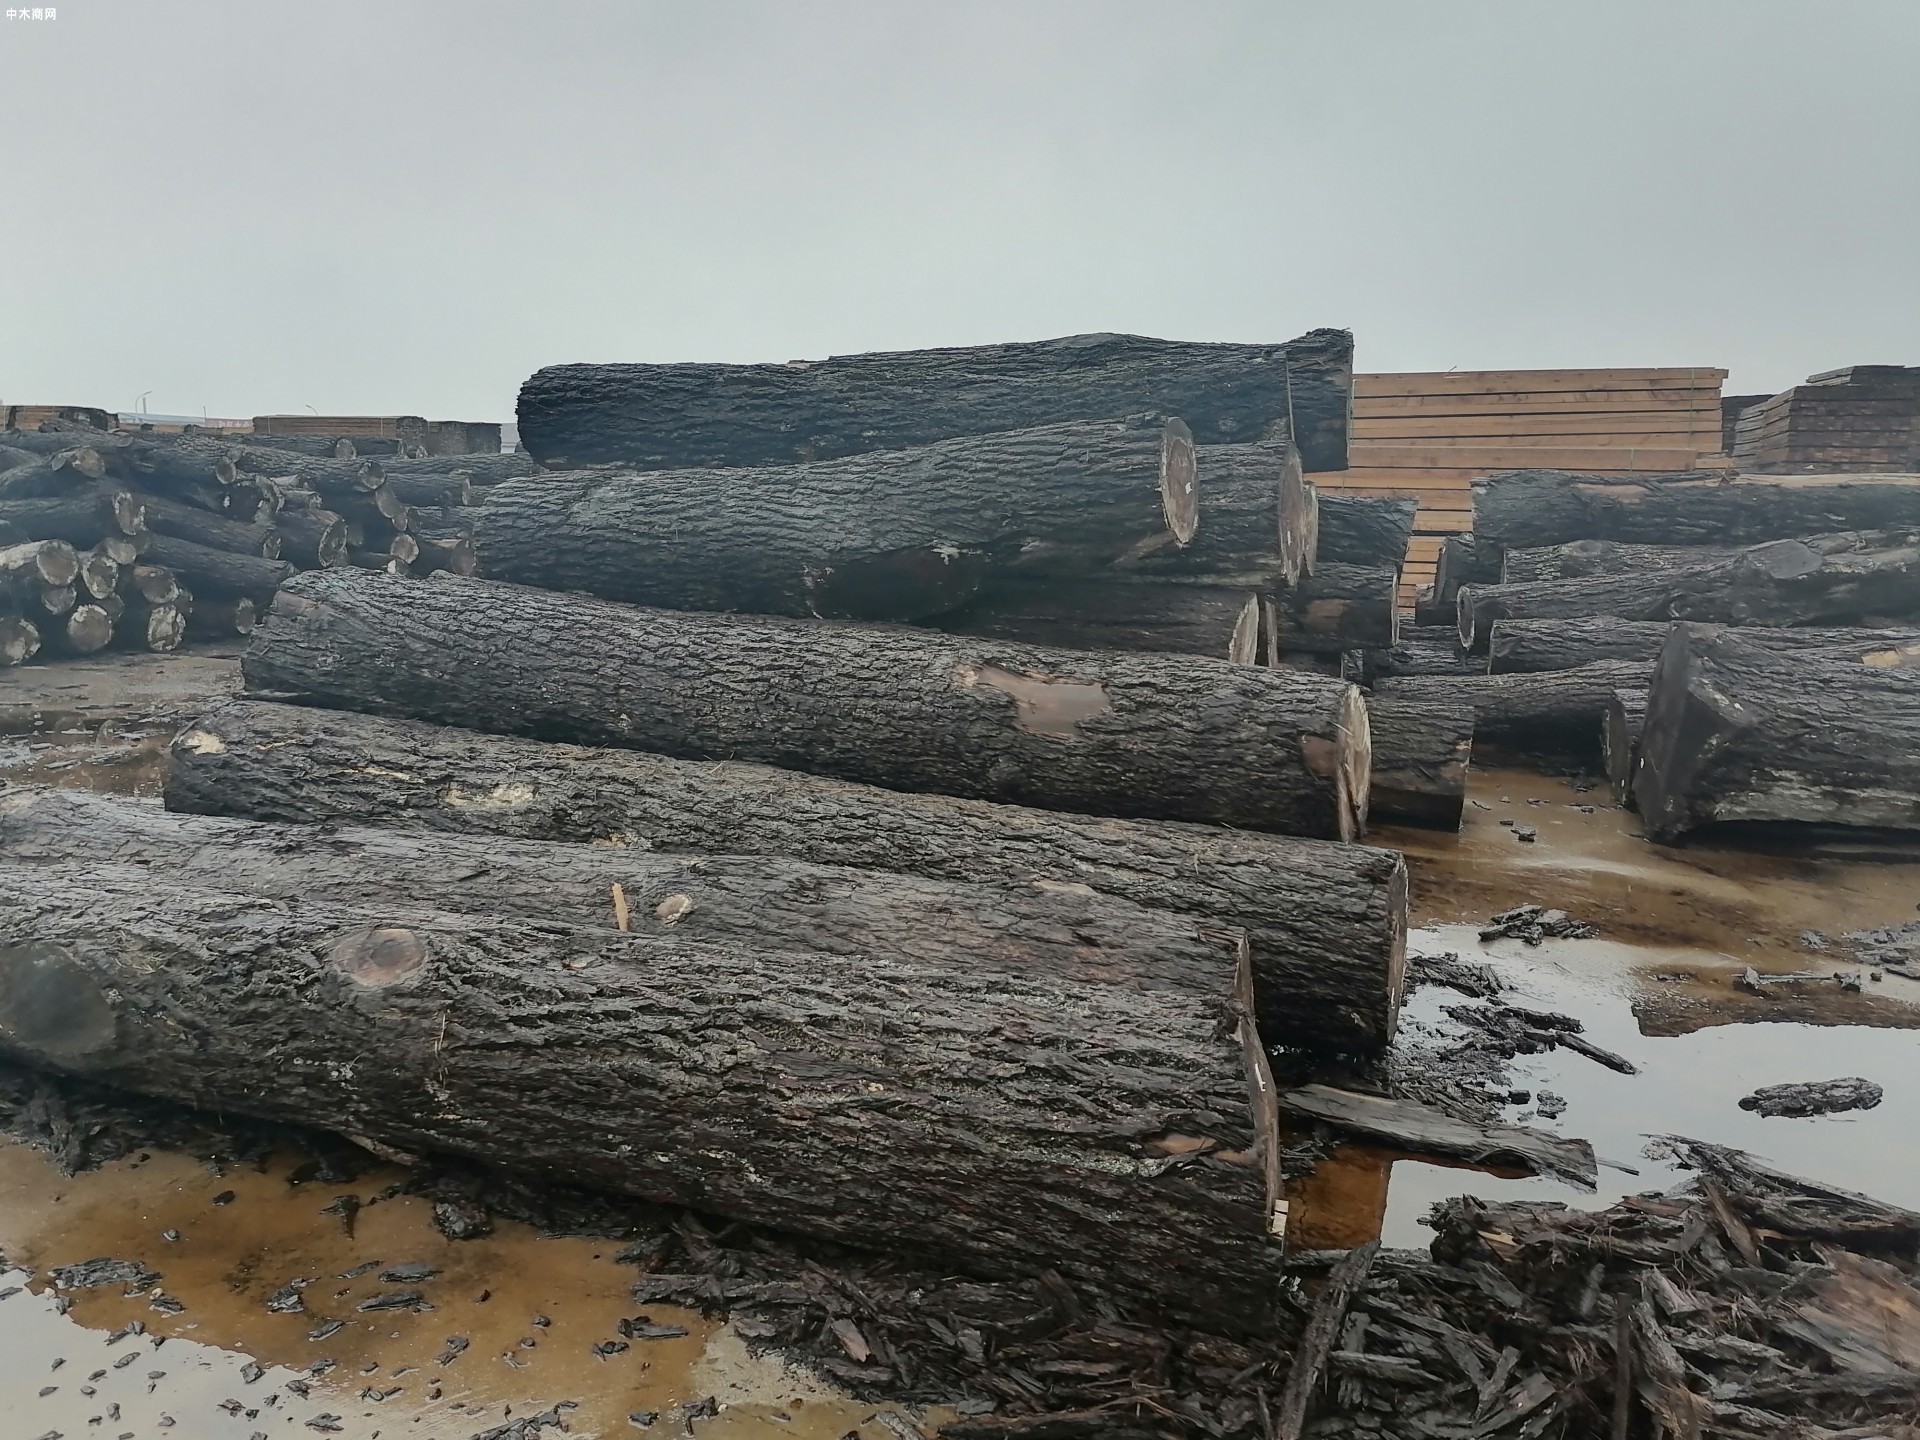 灌云临港产业区木材园物流堆场项目冒严寒抓进度